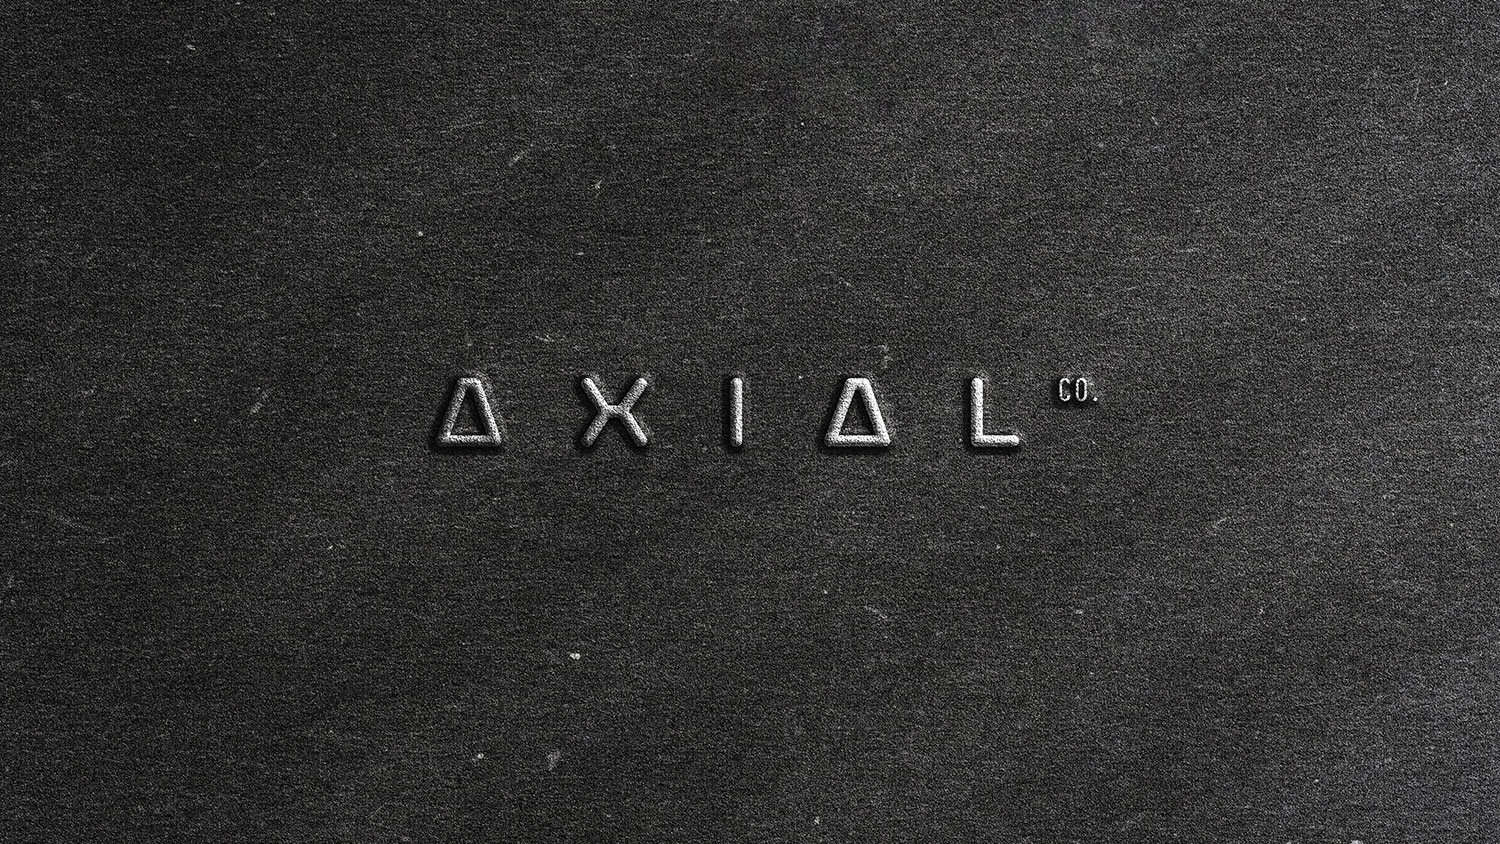 axial-logo